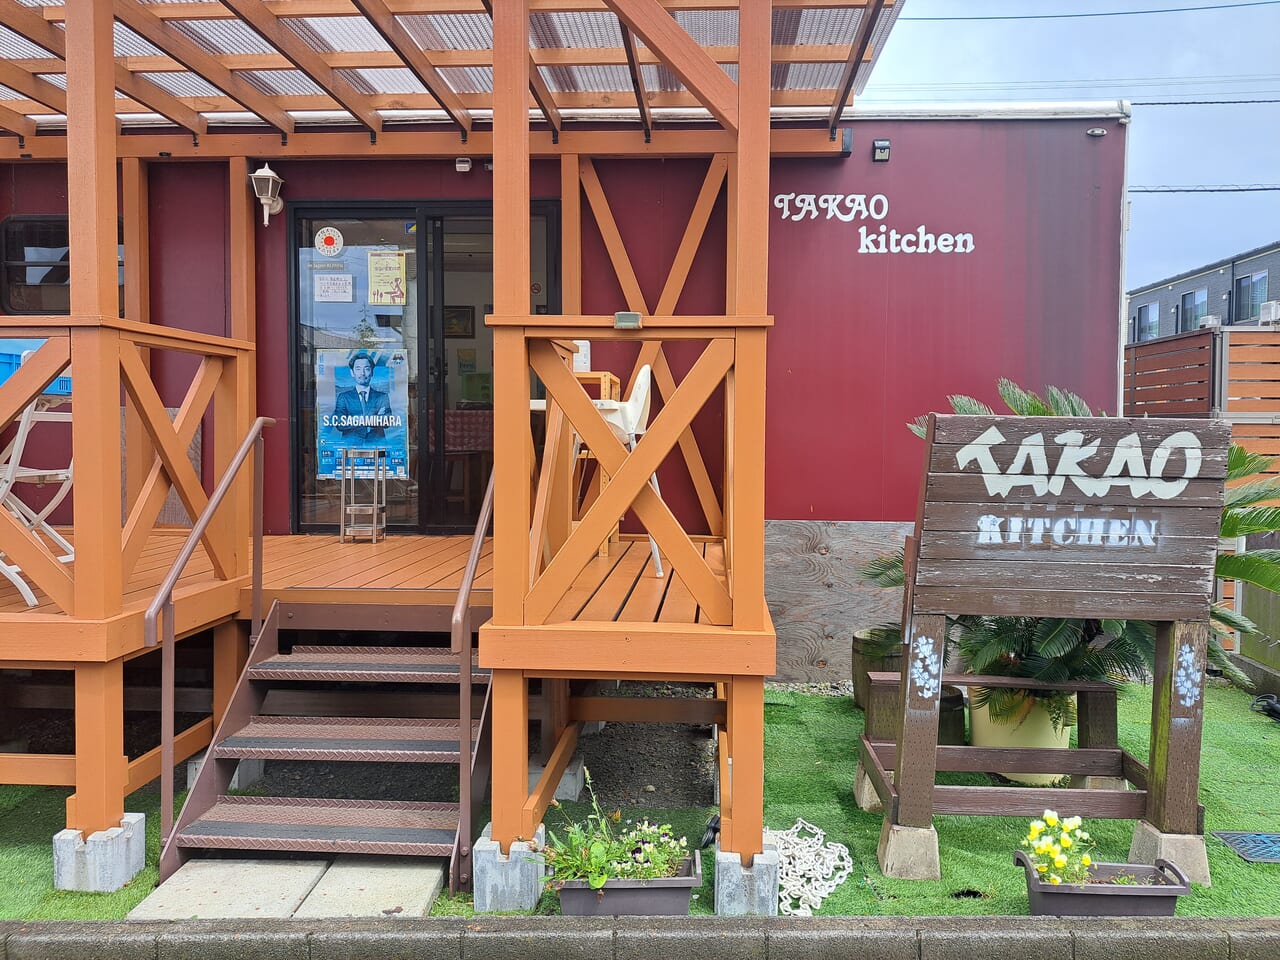 TAKAO kitchen